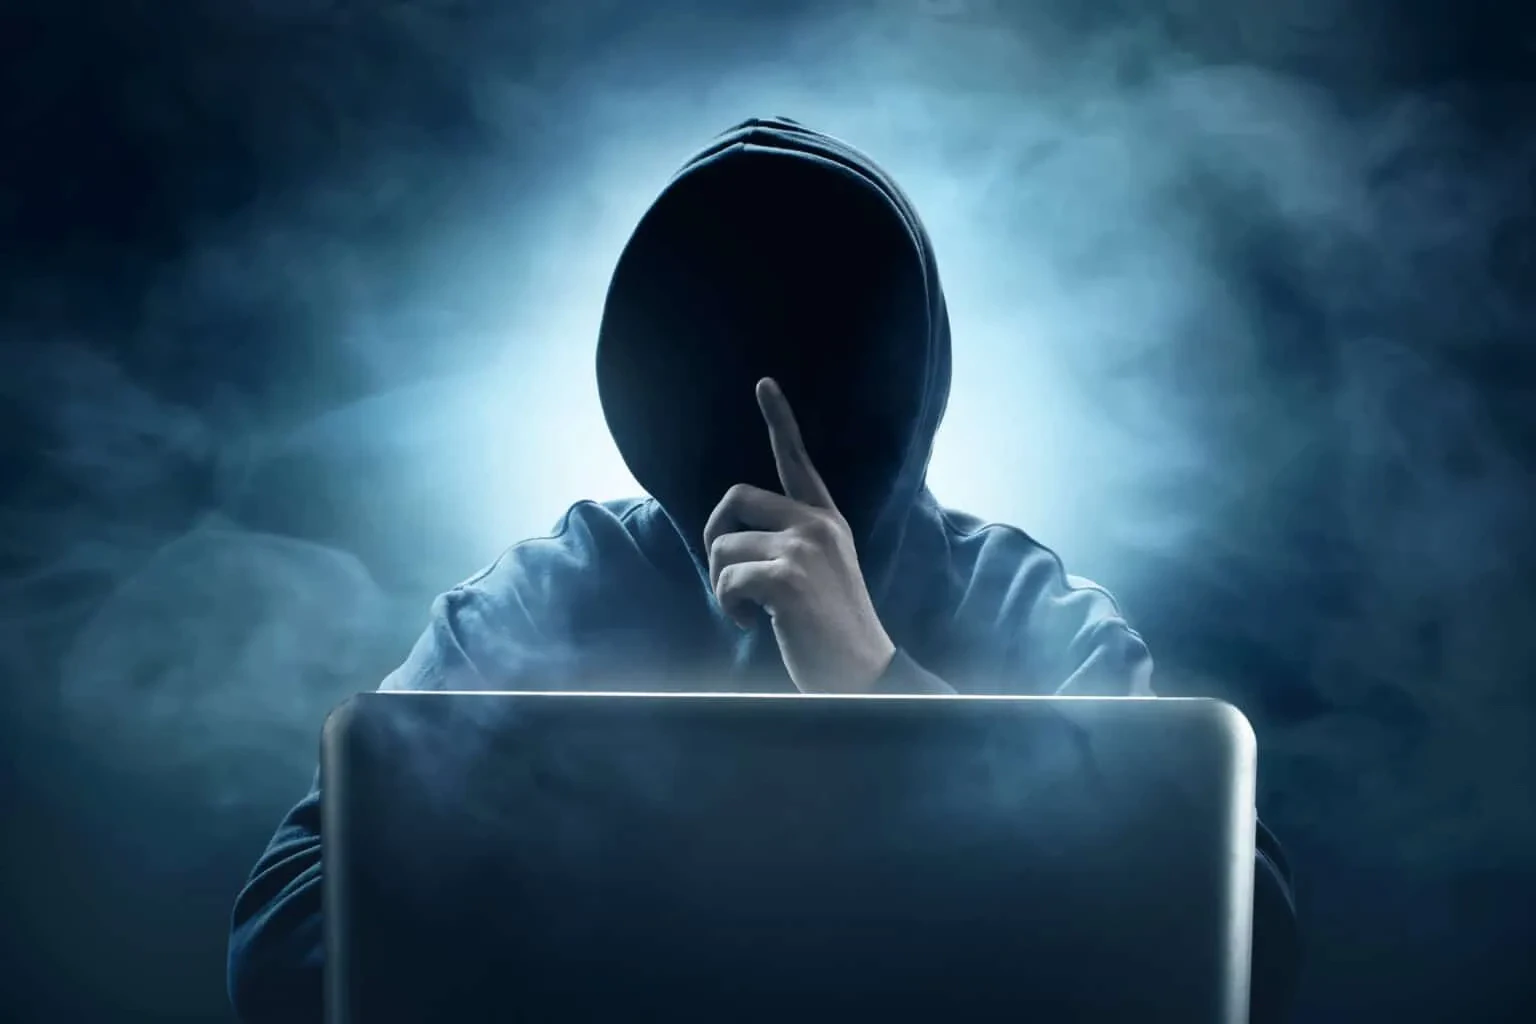 Piratage crypto arnaque skype cryptomonnaies